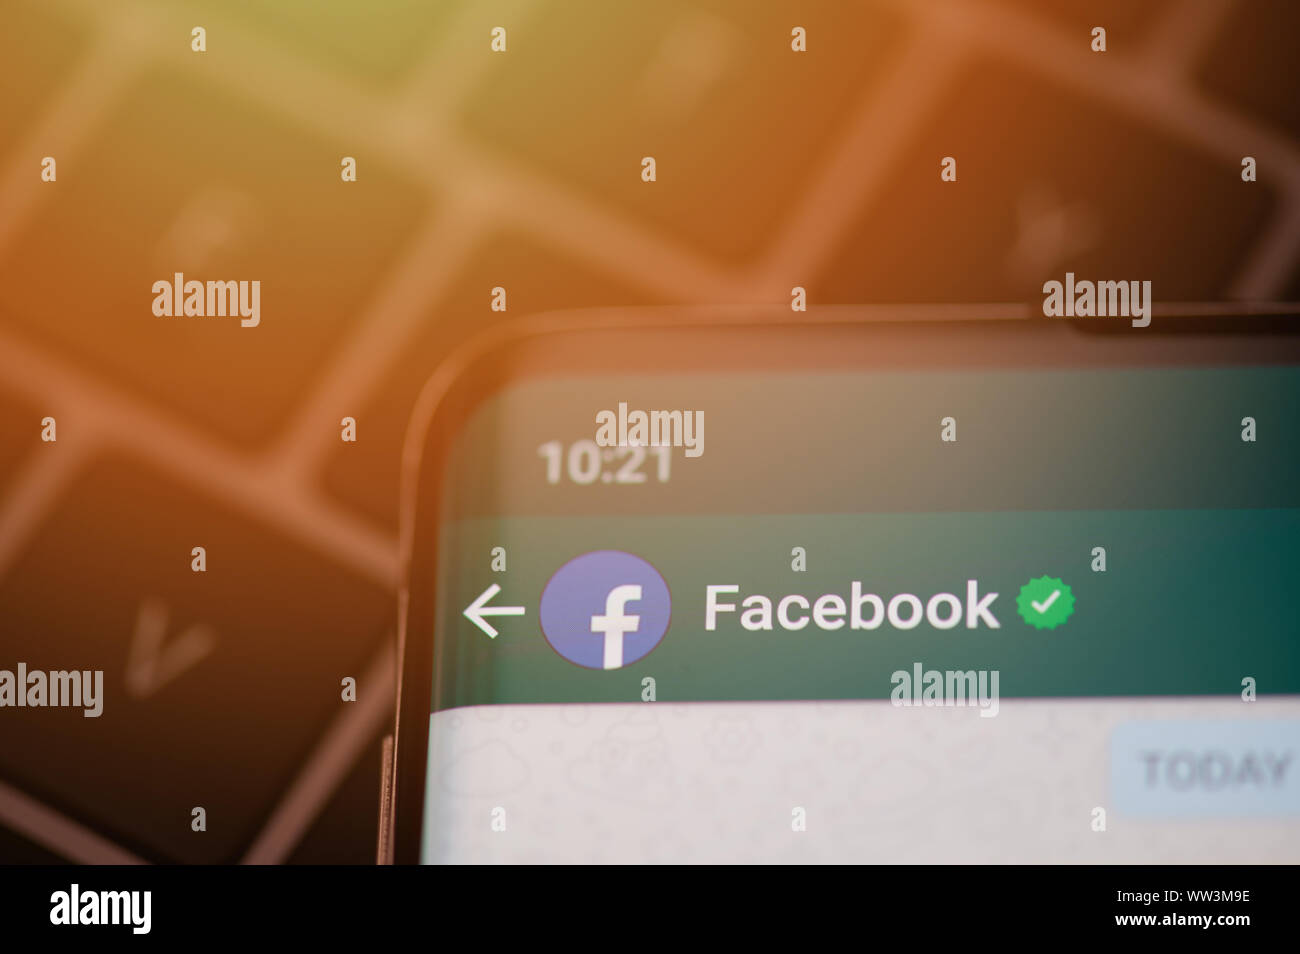 New York, USA - 12. September 2019: Nachricht von Facebook in whatsapp App im Bildschirm des Smartphones Nähe zu sehen. Stockfoto